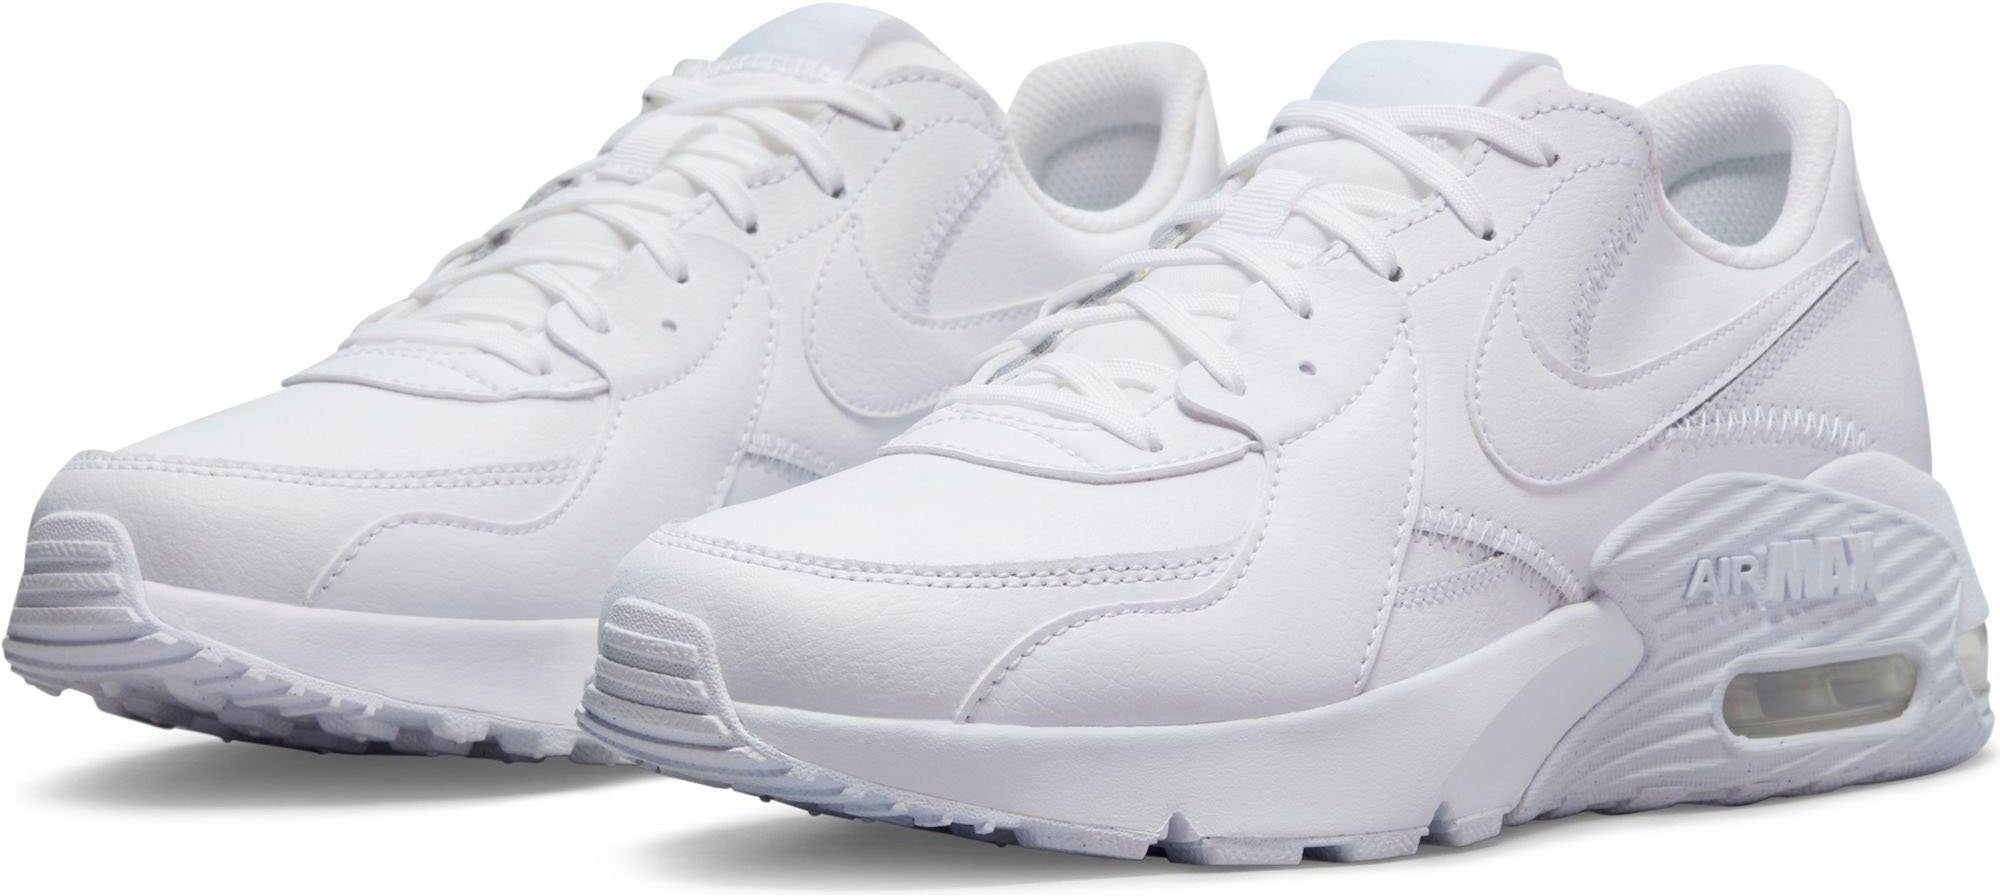 Weiße Nike Damenschuhe online kaufen | OTTO